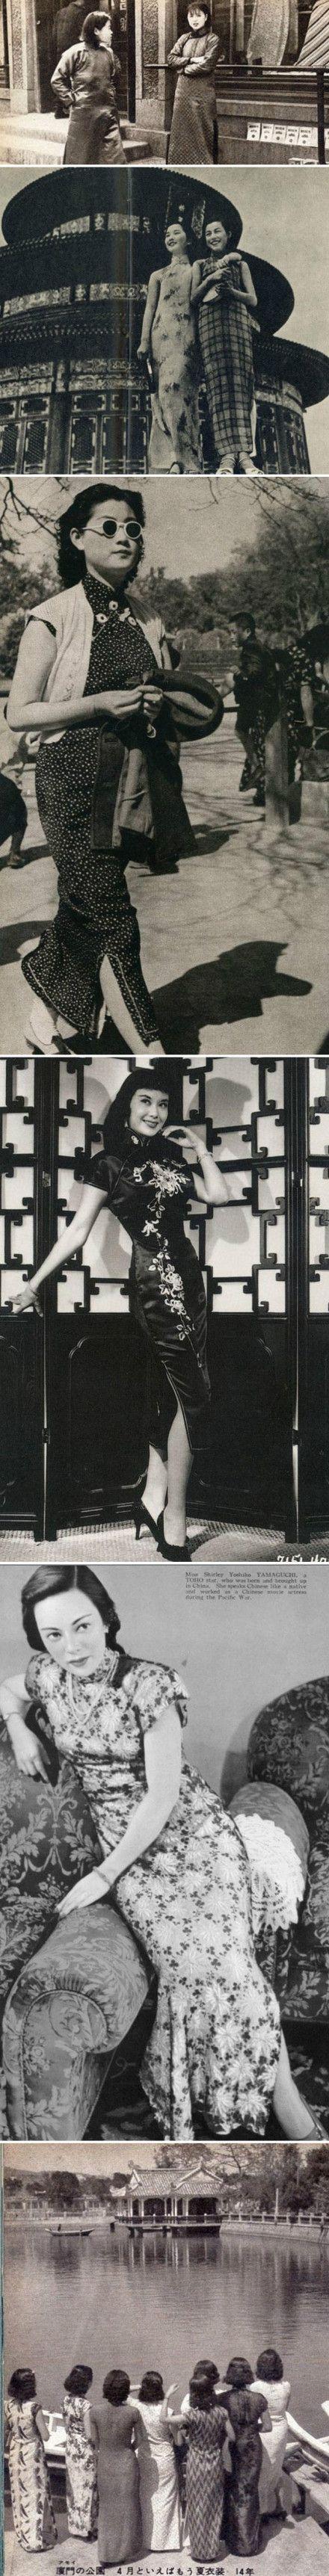 民国时期的旗袍美女,将旗袍演绎得千姿百态,楚楚动人的莫过于上海女人